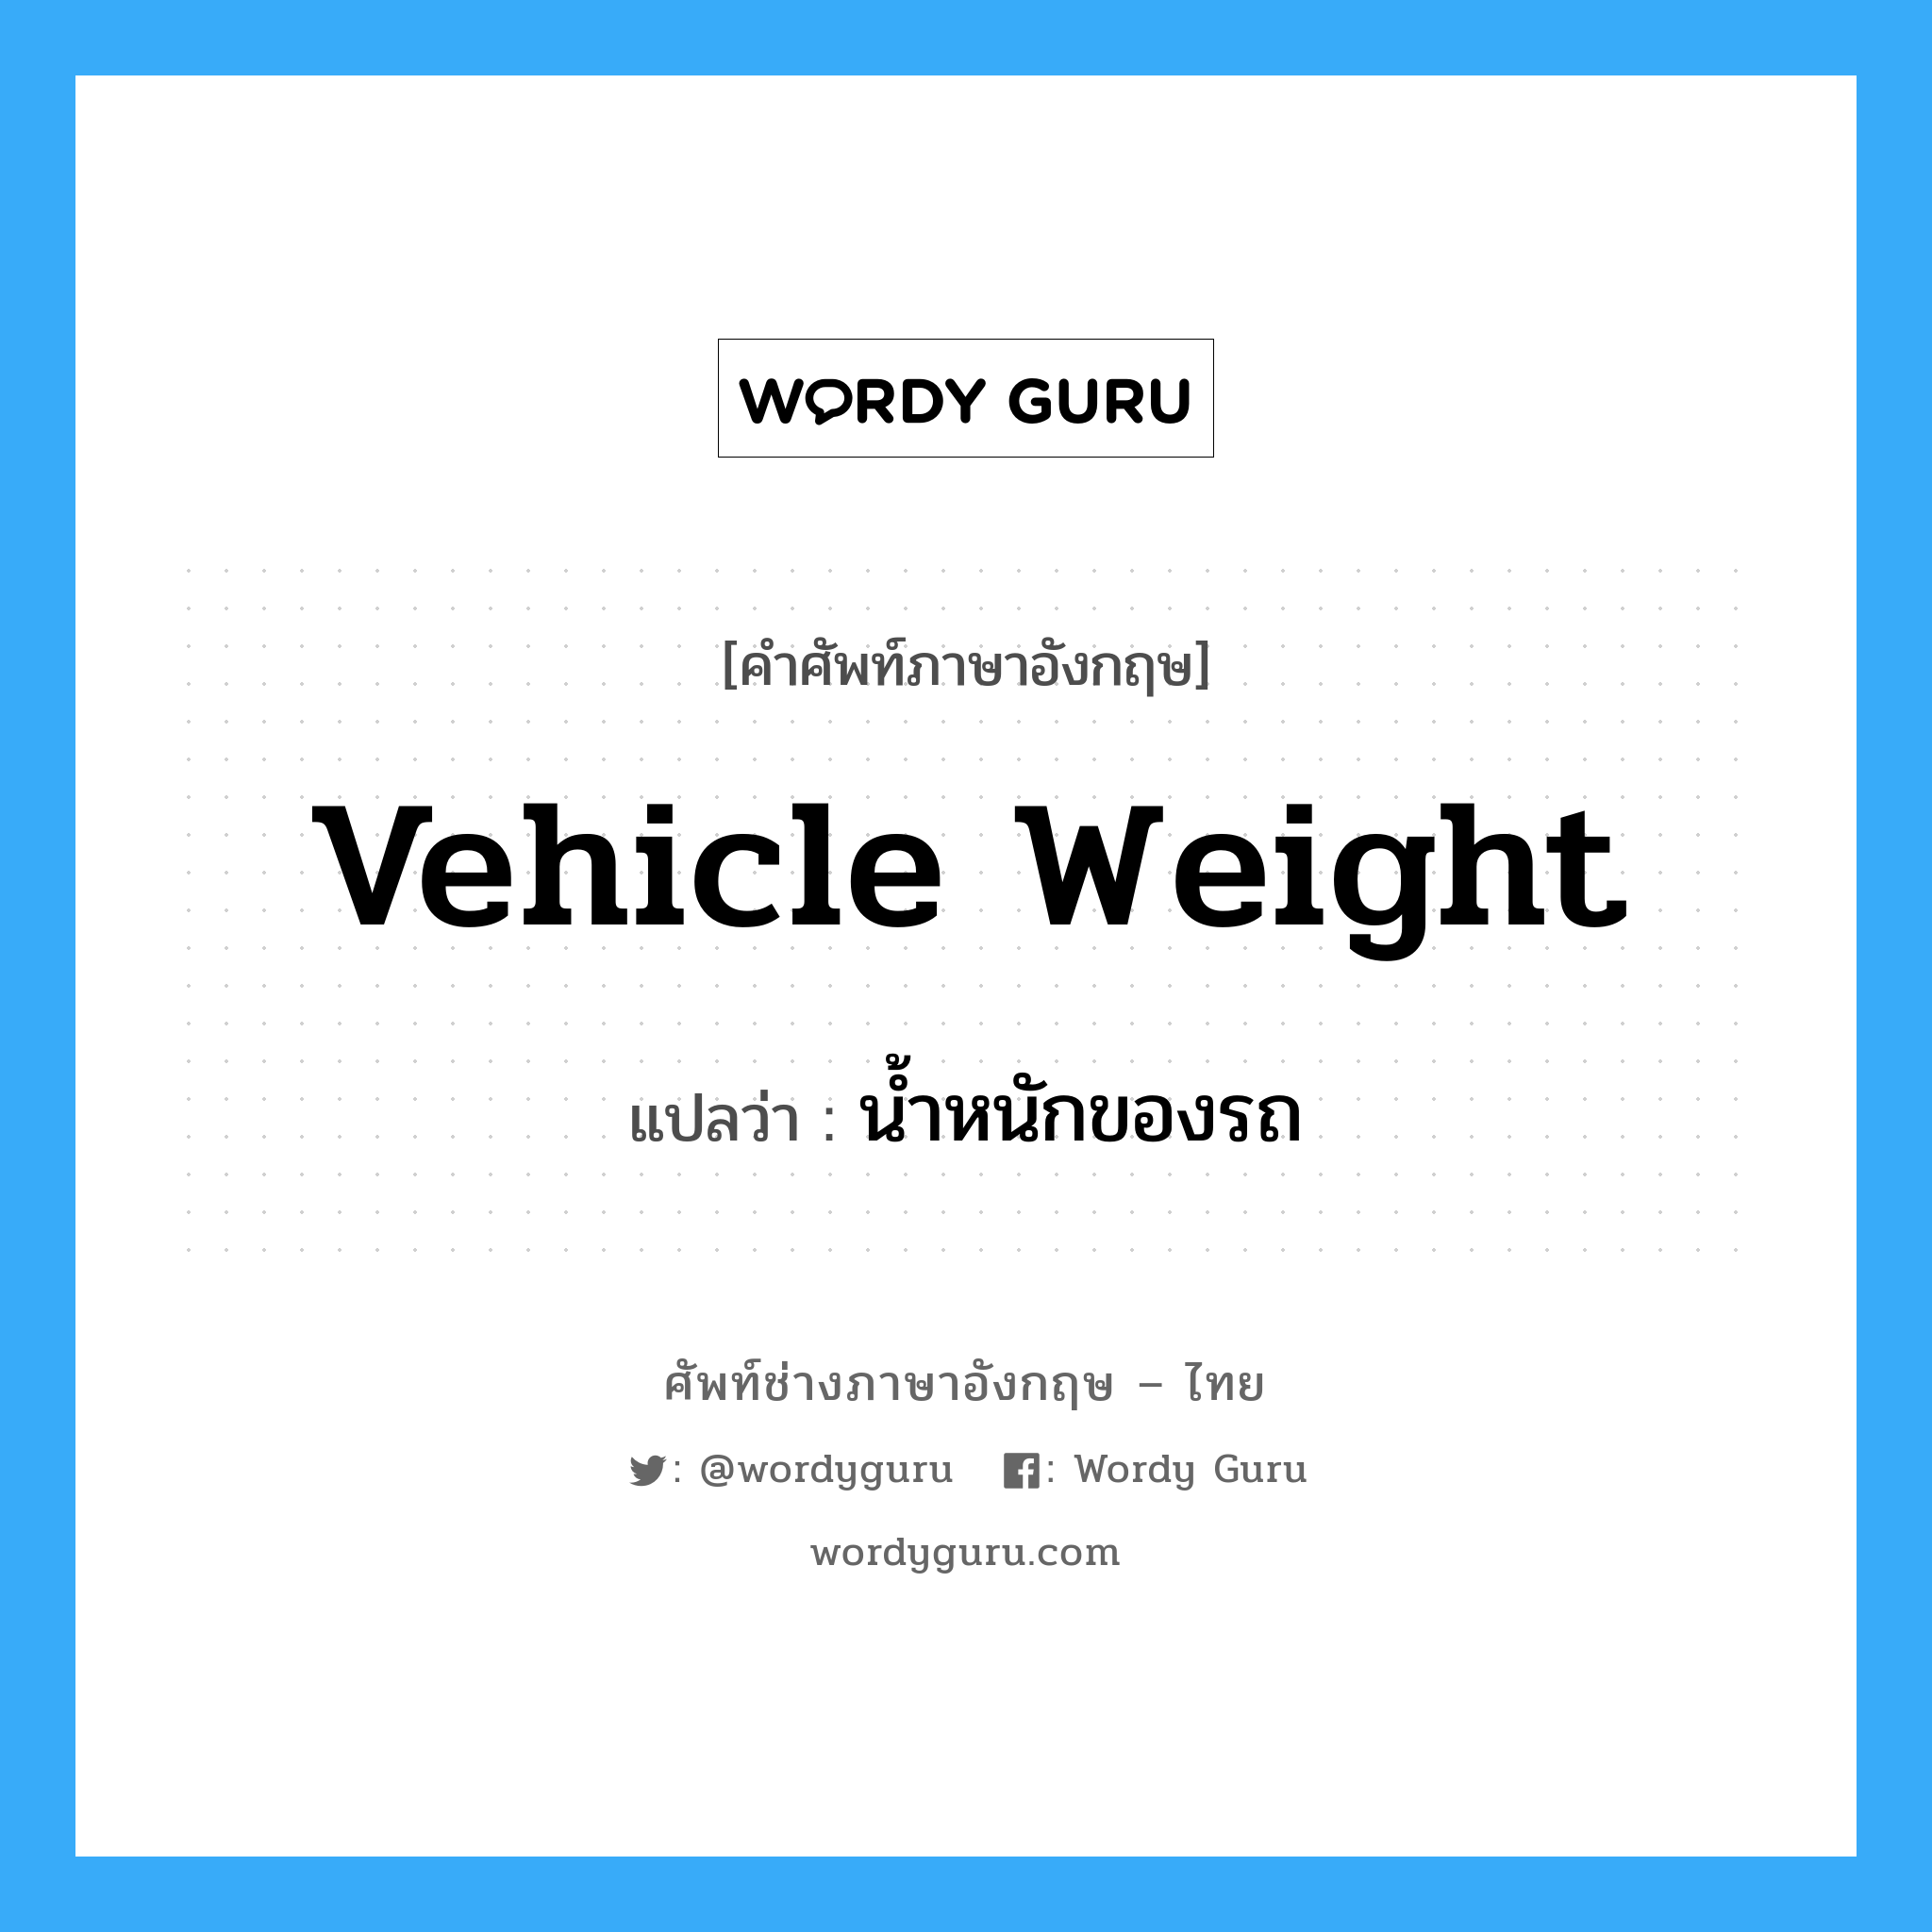 น้ำหนักของรถ ภาษาอังกฤษ?, คำศัพท์ช่างภาษาอังกฤษ - ไทย น้ำหนักของรถ คำศัพท์ภาษาอังกฤษ น้ำหนักของรถ แปลว่า vehicle weight